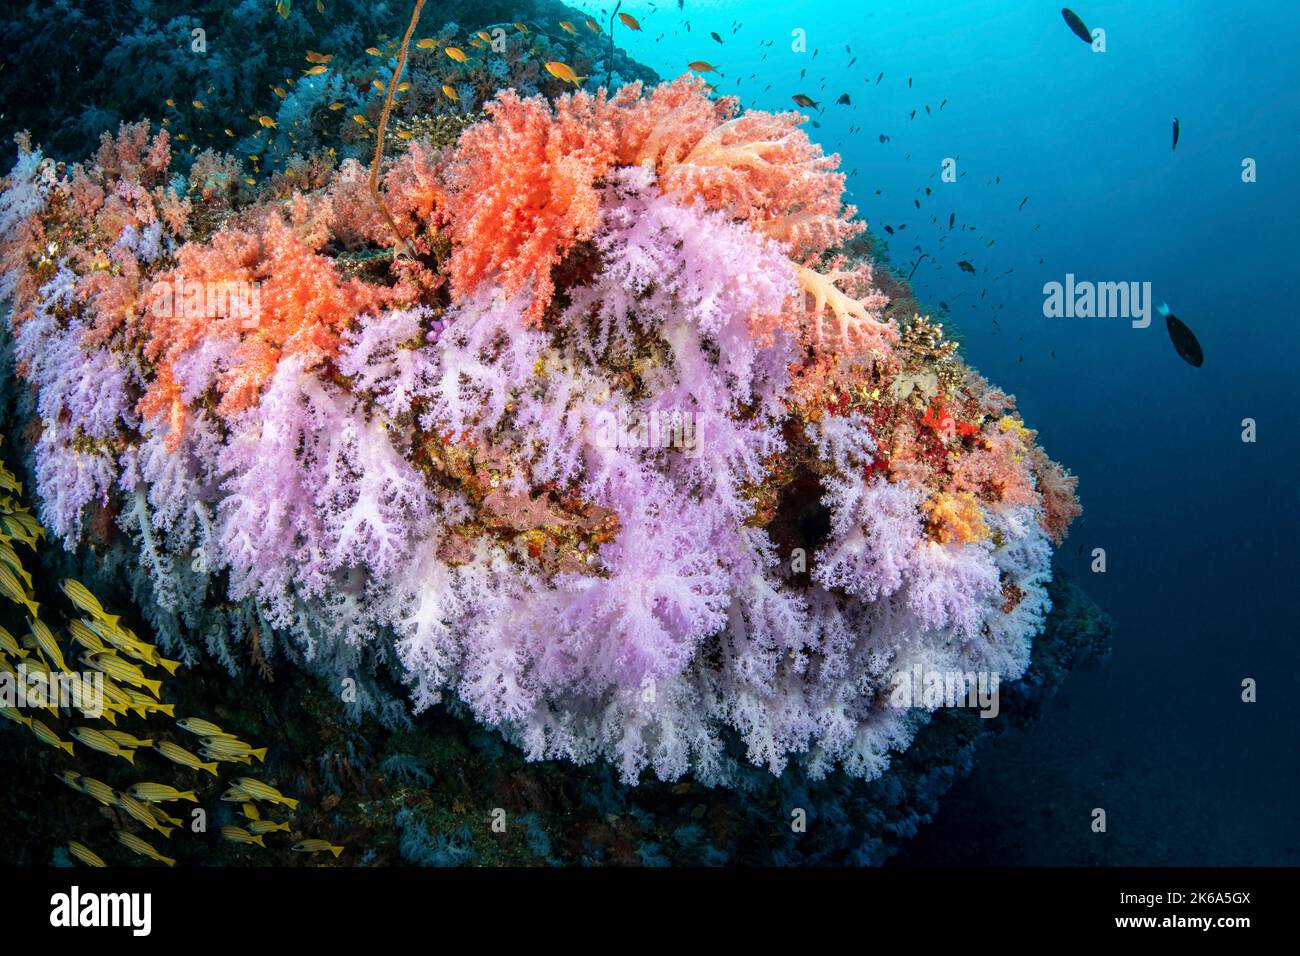 Weiche Korallen schmücken dieses Riff, wenn es an eine Ecke kommt und aus dem Riff, den Malediven, ragt. Stockfoto